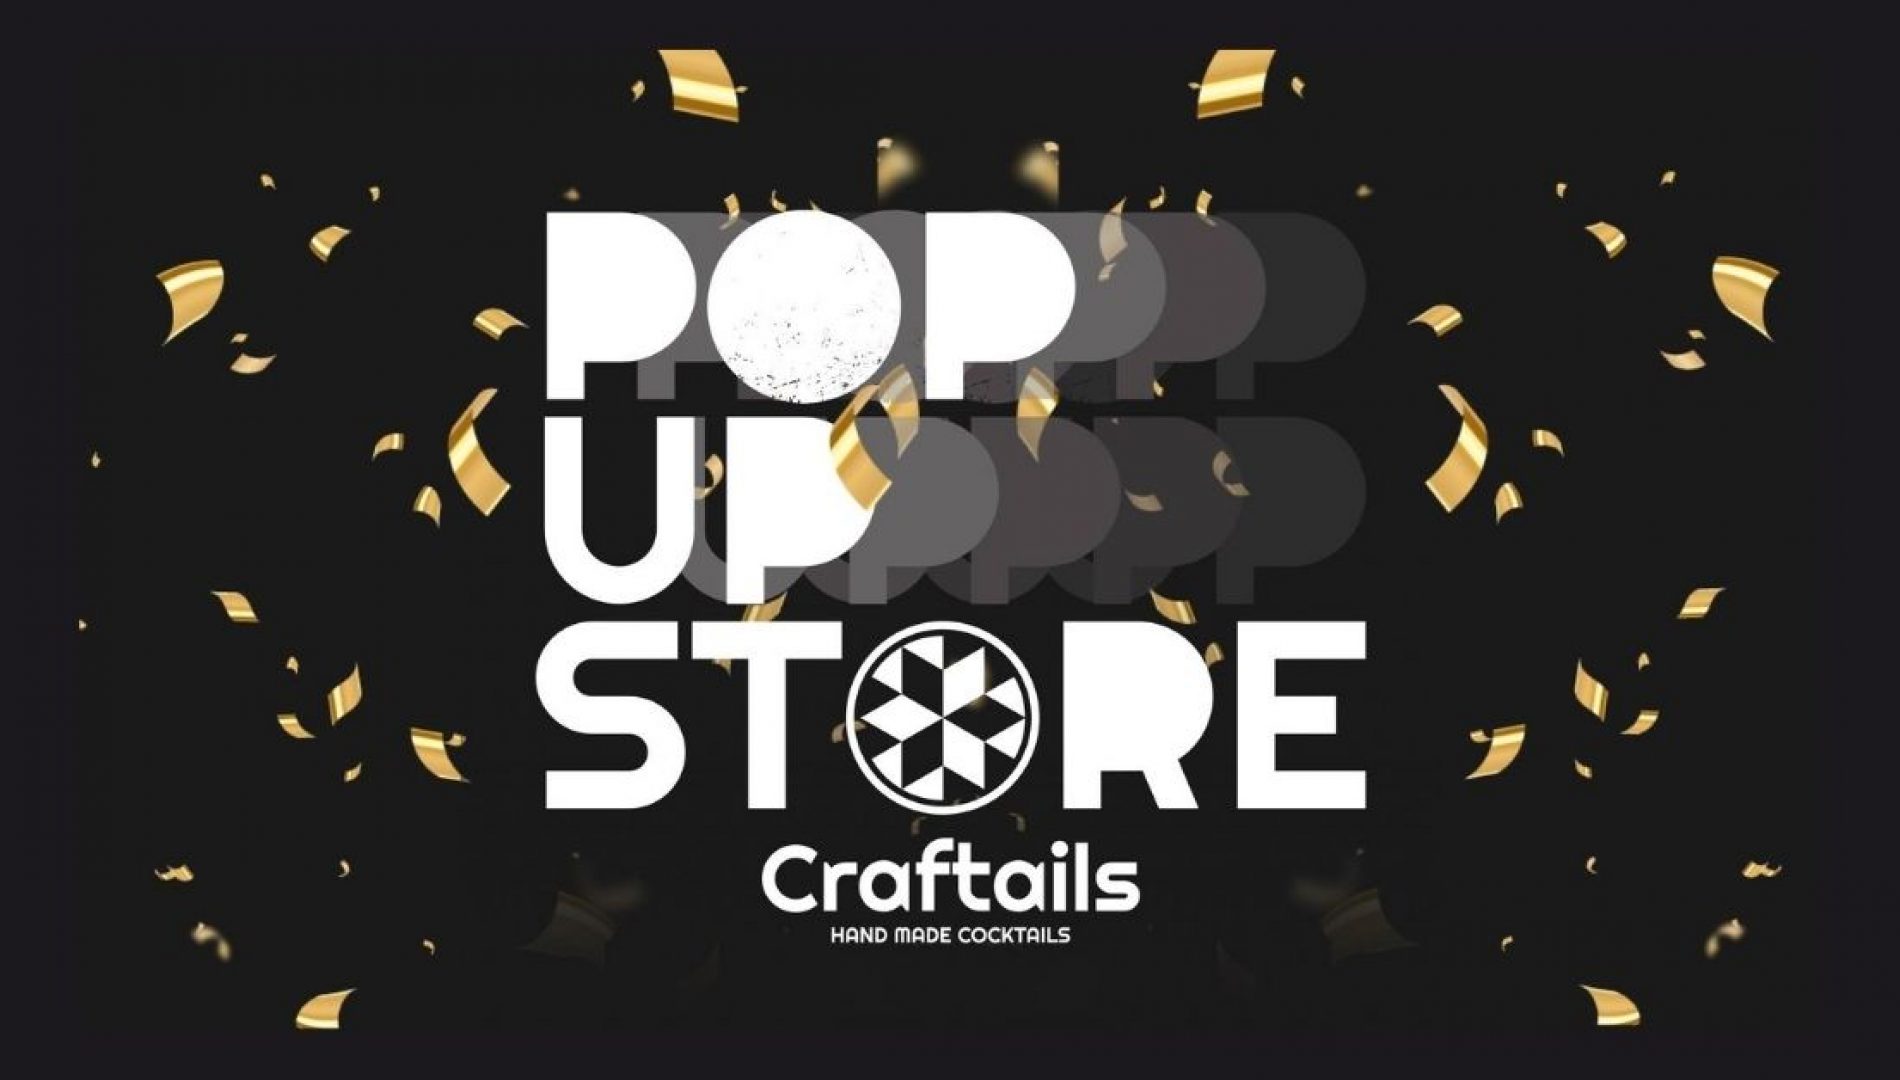 Blog Craftails popupstore 2020